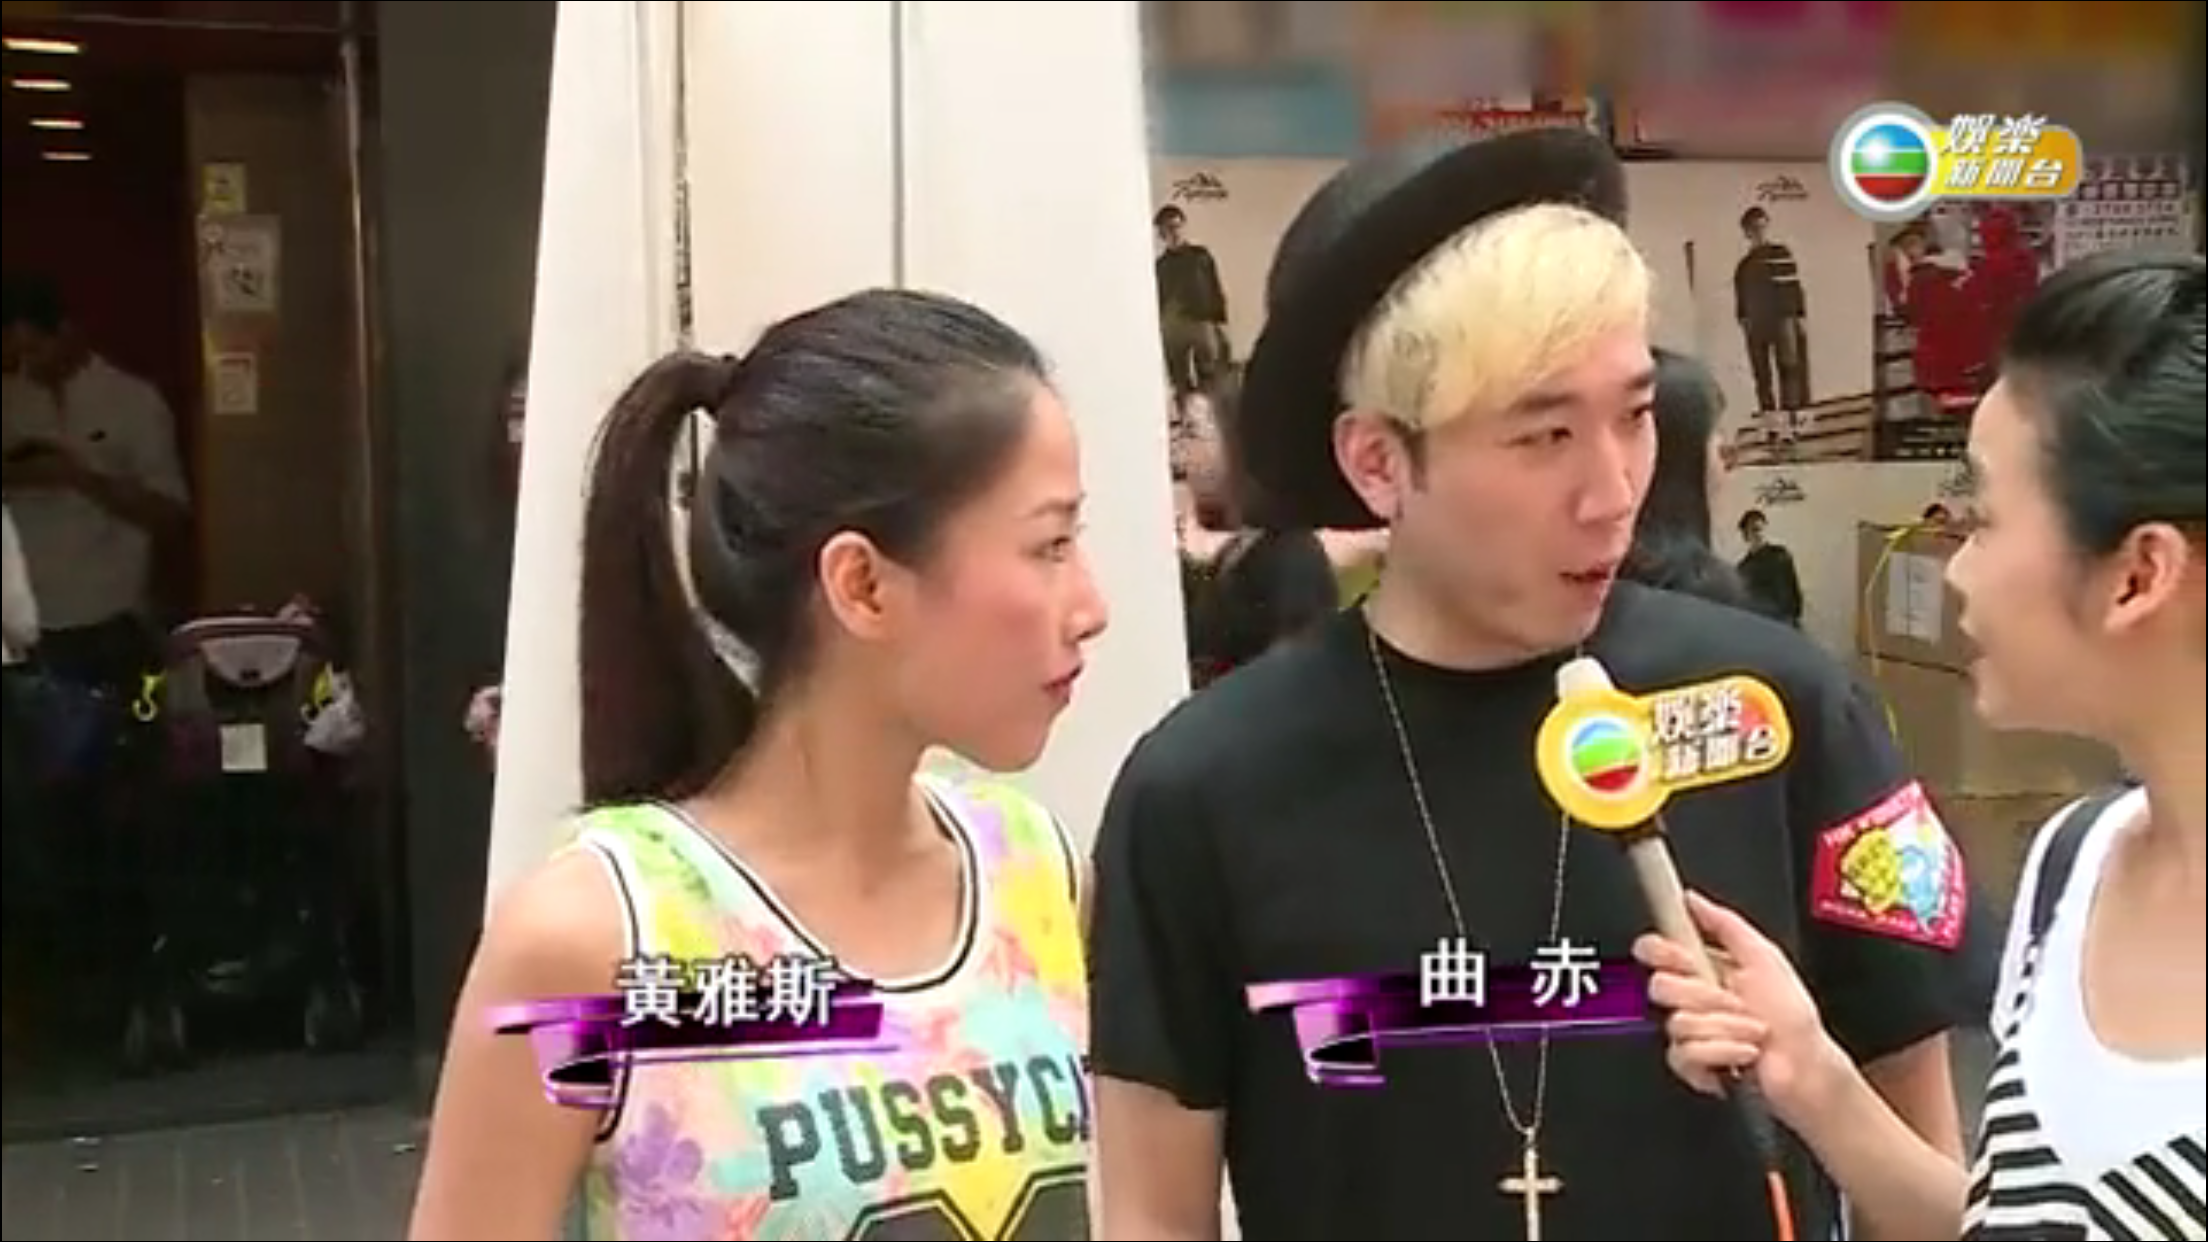 曲赤 K-CHEK 演藝人傳媒報導: TVB 娛樂新聞台 曲赤帶同師妹大唱Rap歌 帶動現場氣氛高漲